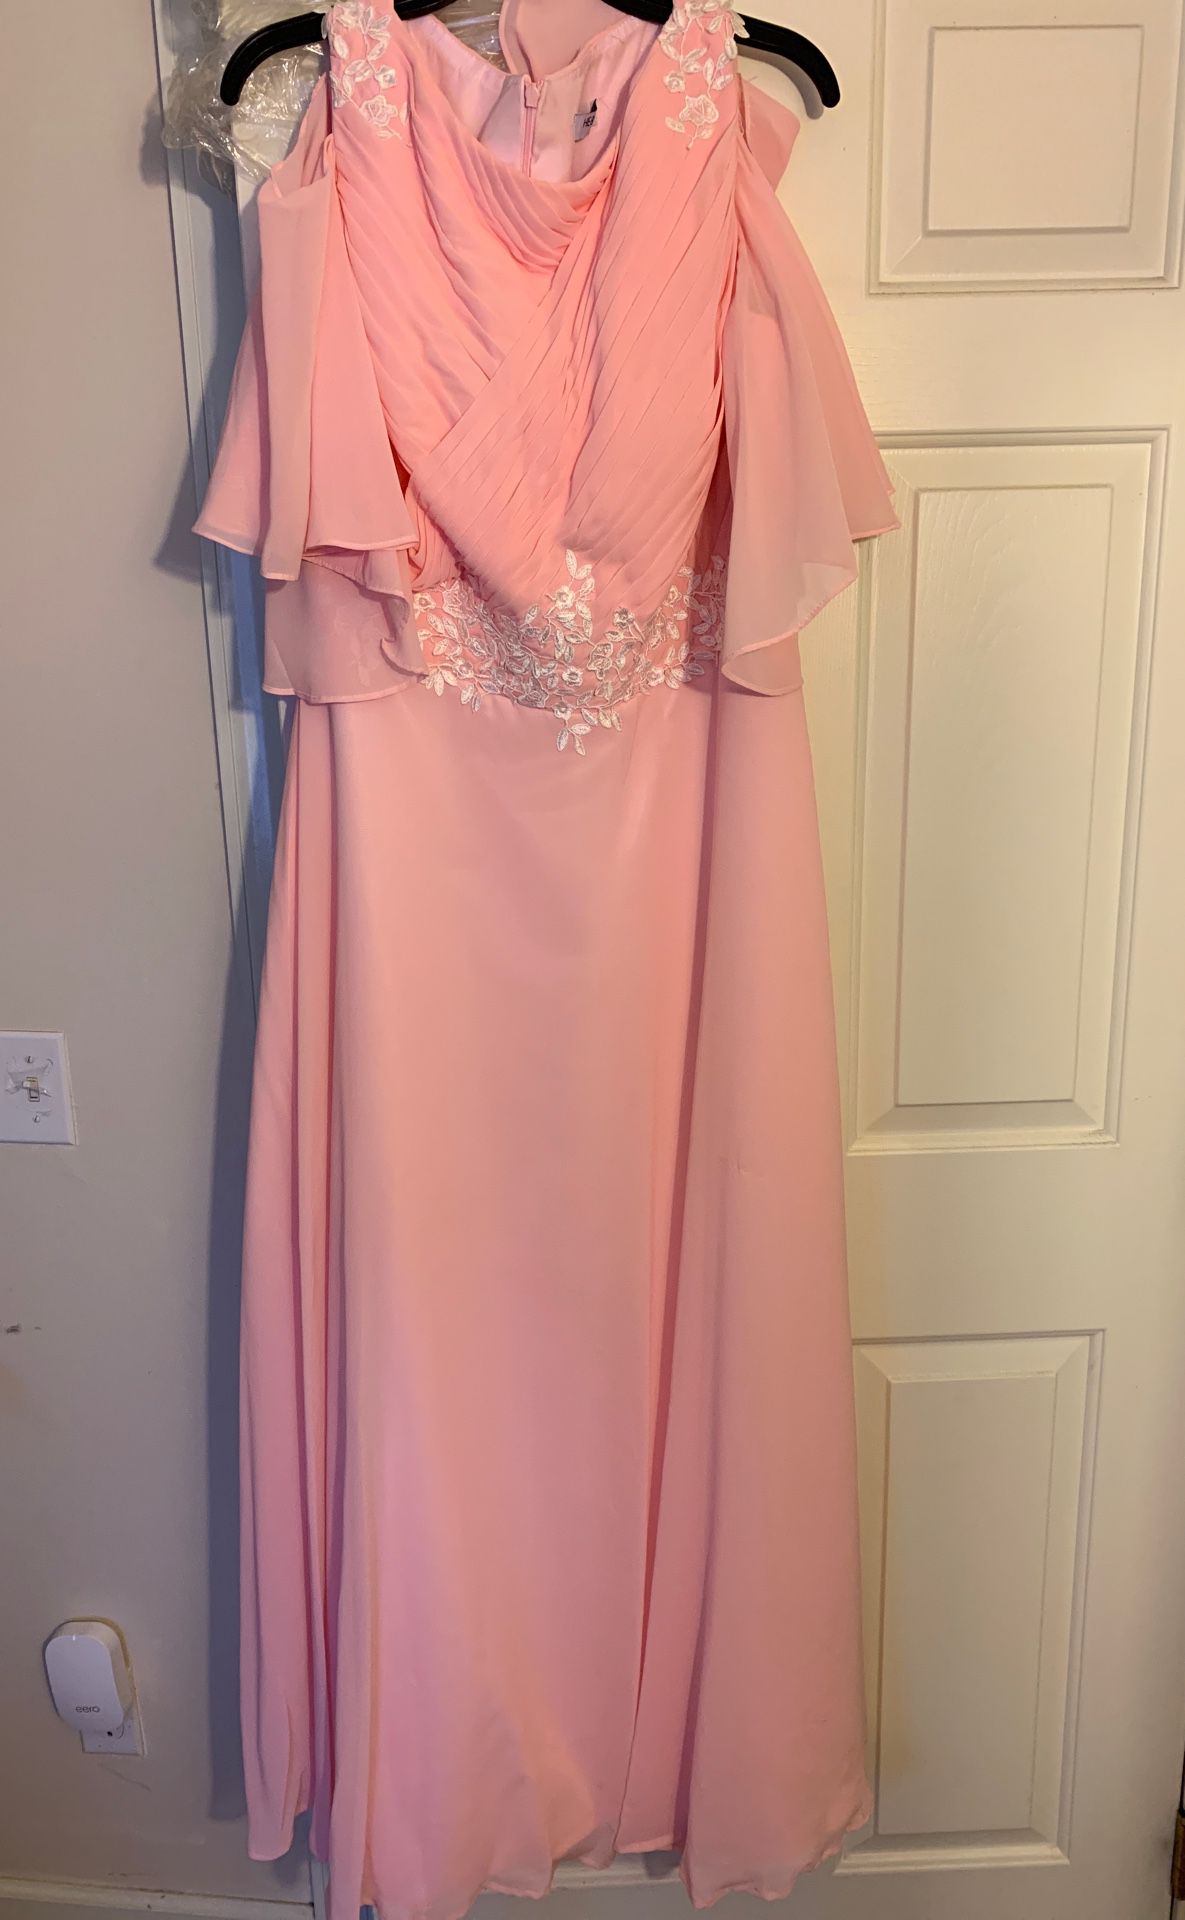 Bare shoulder, pink bridesmaid dress-14/16